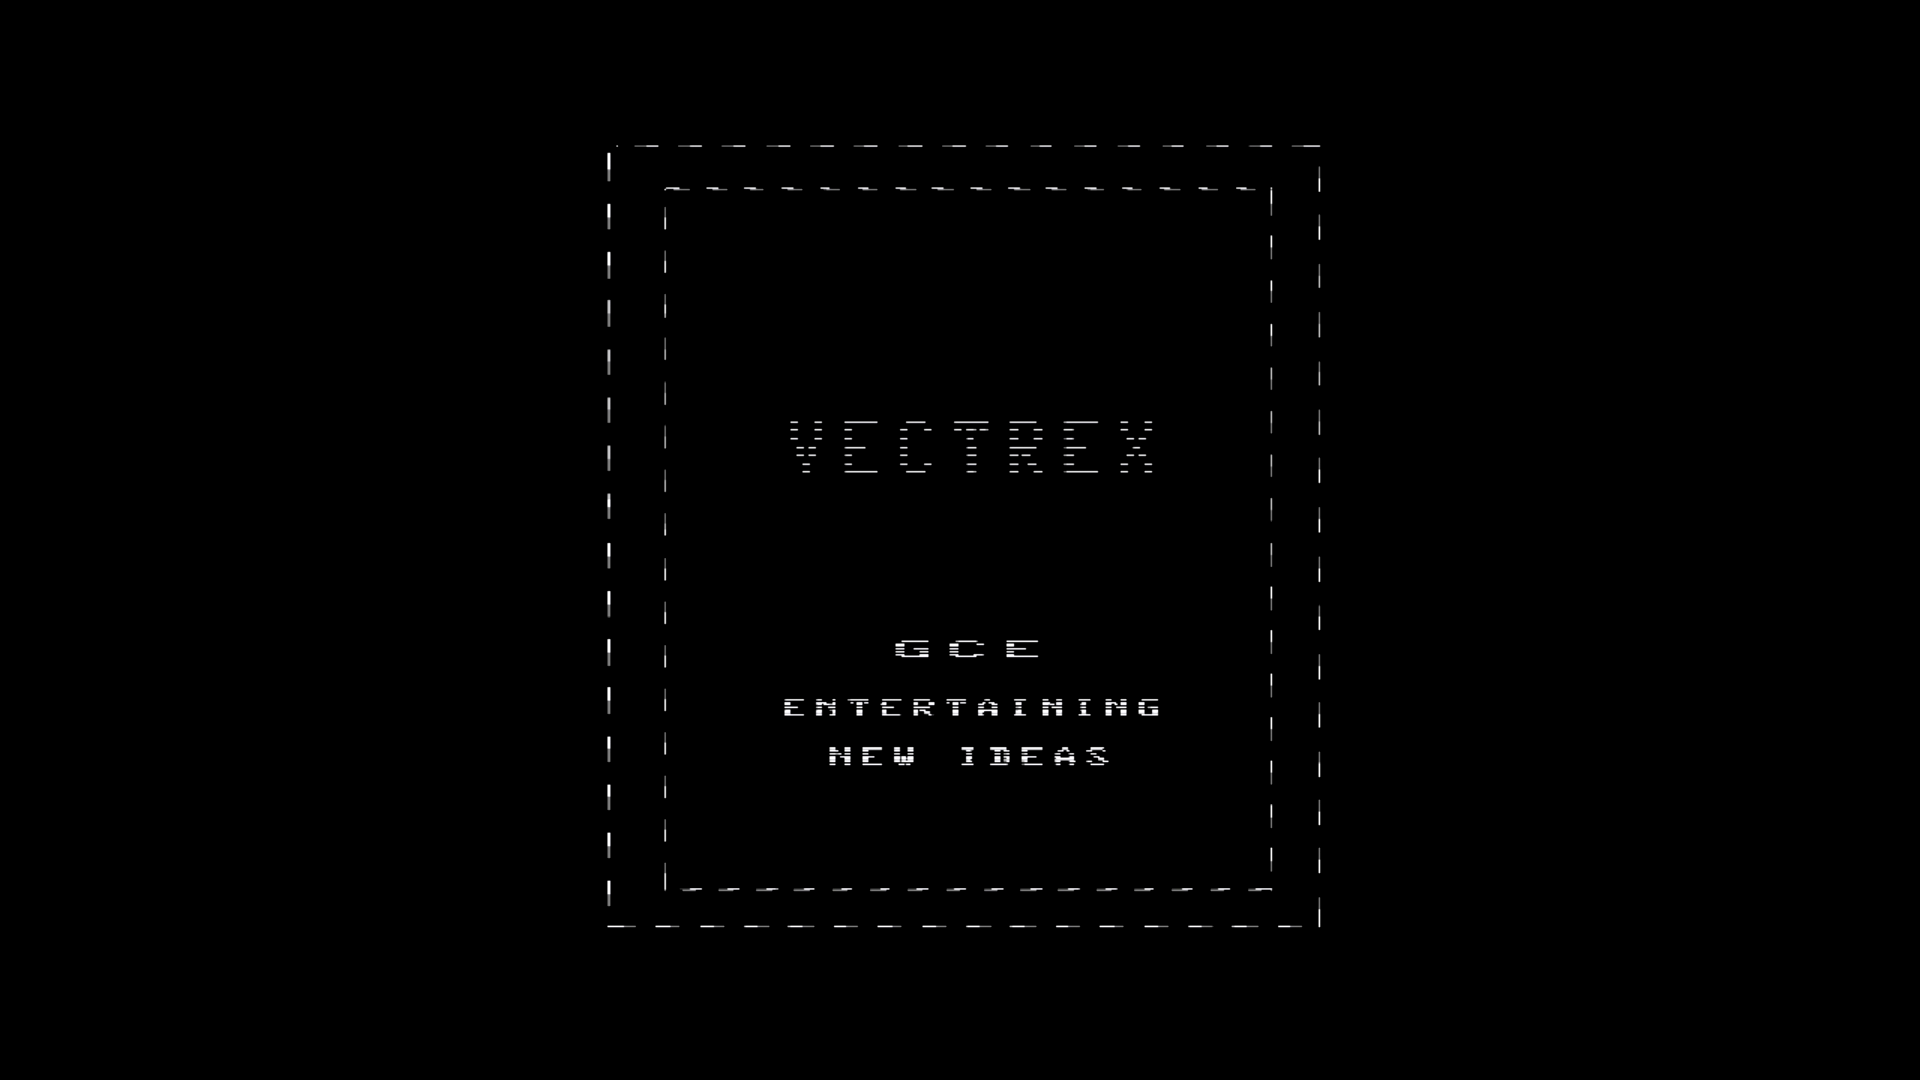 起動画面も再現した『MiSTer』のVectrex（光速船）コアをチェック